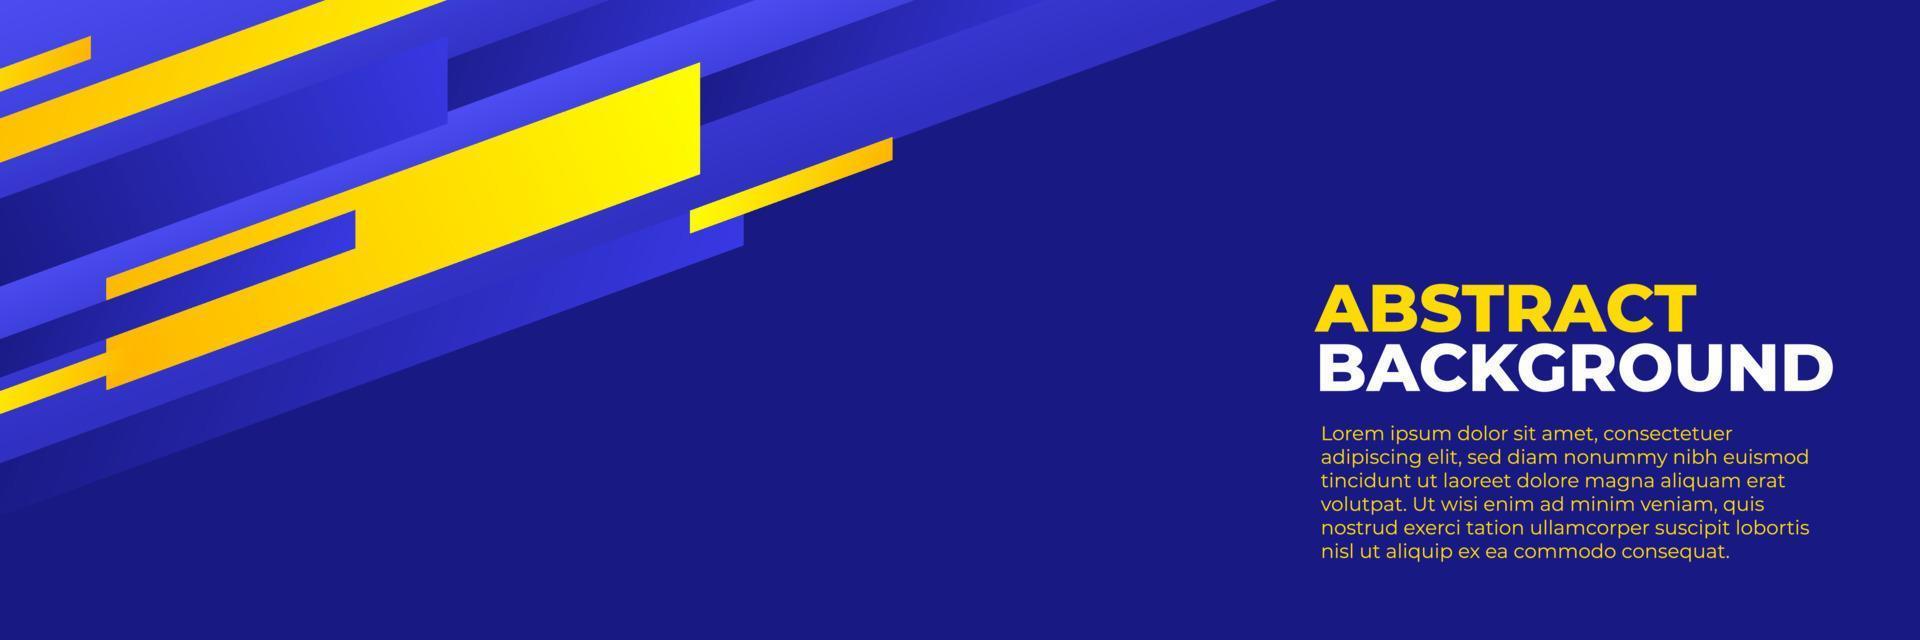 vecteur de conception de bannière bleue abstraite, modèle de fond horizontal sportif dynamique avec des formes bleues et jaunes pour la promotion des médias ou la bannière web